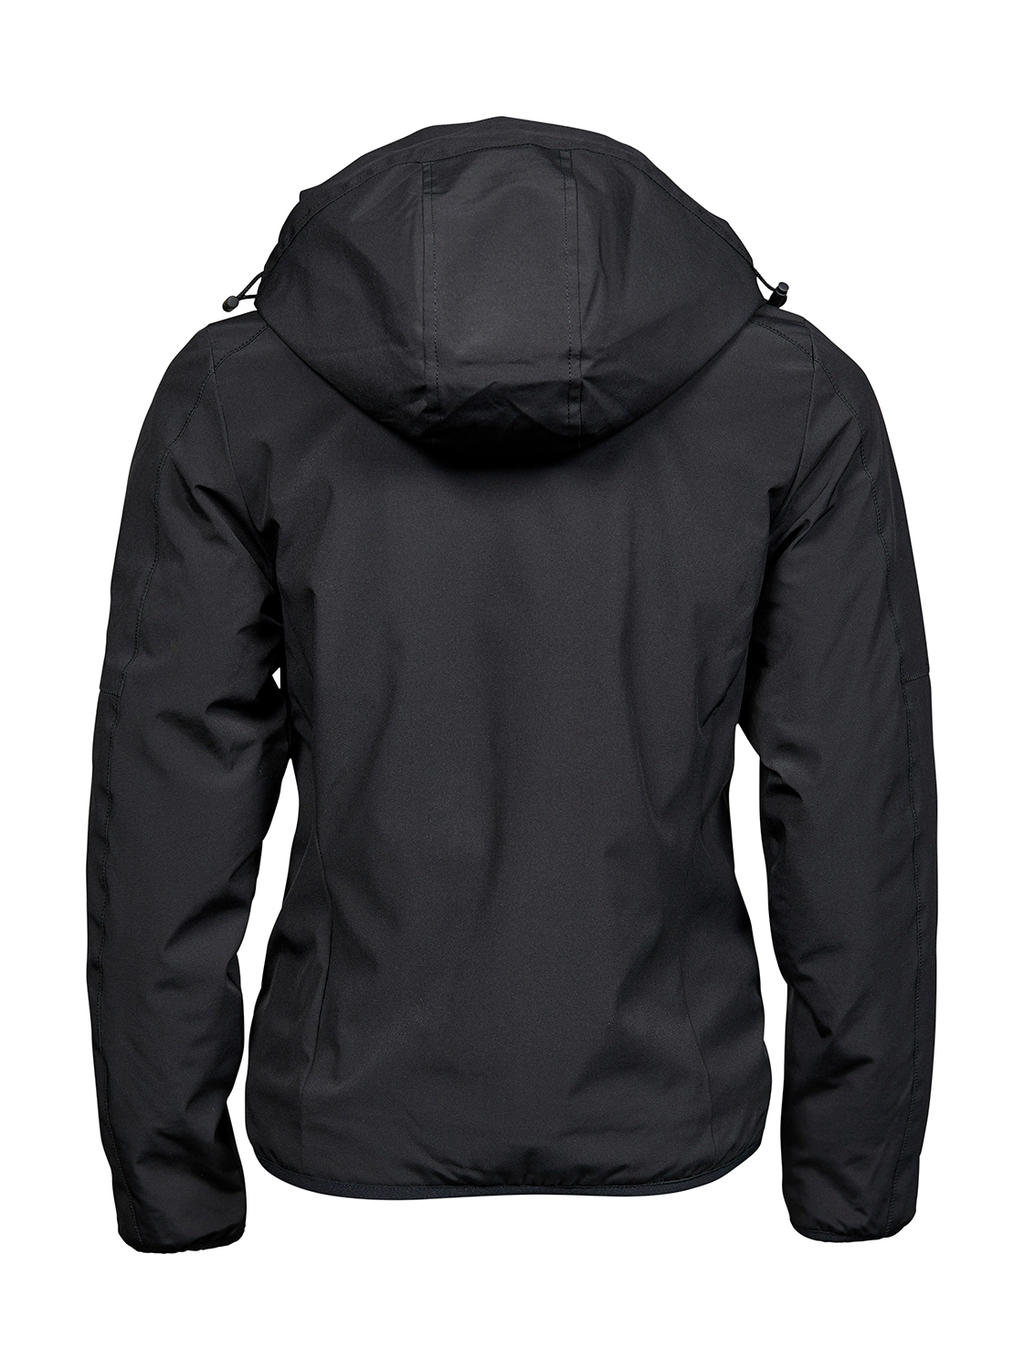  Ladies Urban Adventure Jacket in Farbe Black